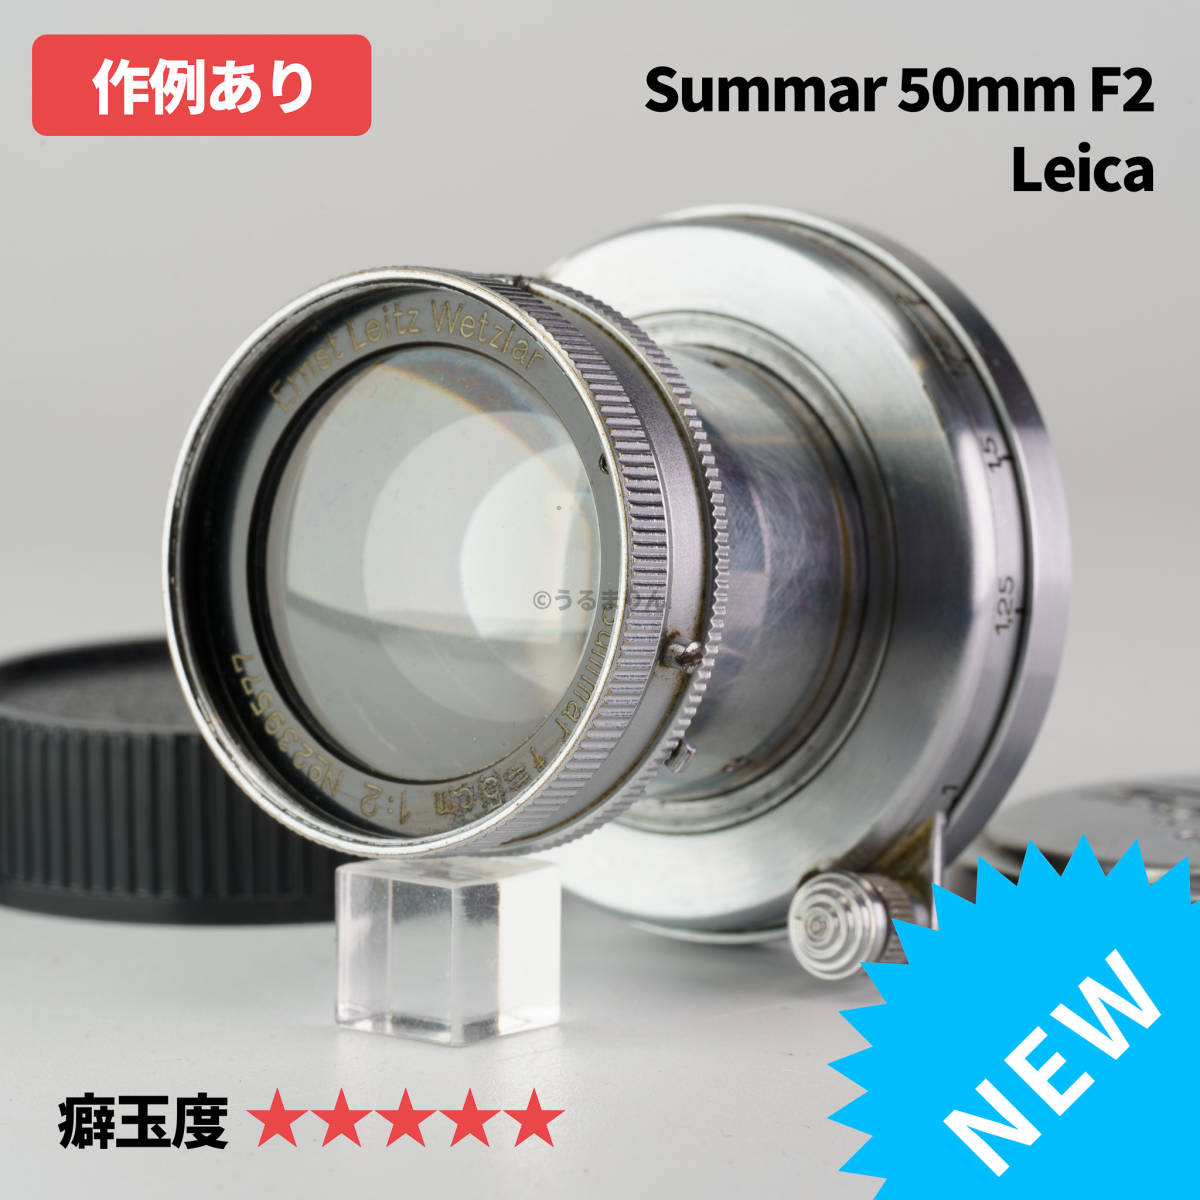 Leica Blue Coated Summar 50mm f2 オールドレンズ www.portonews.com